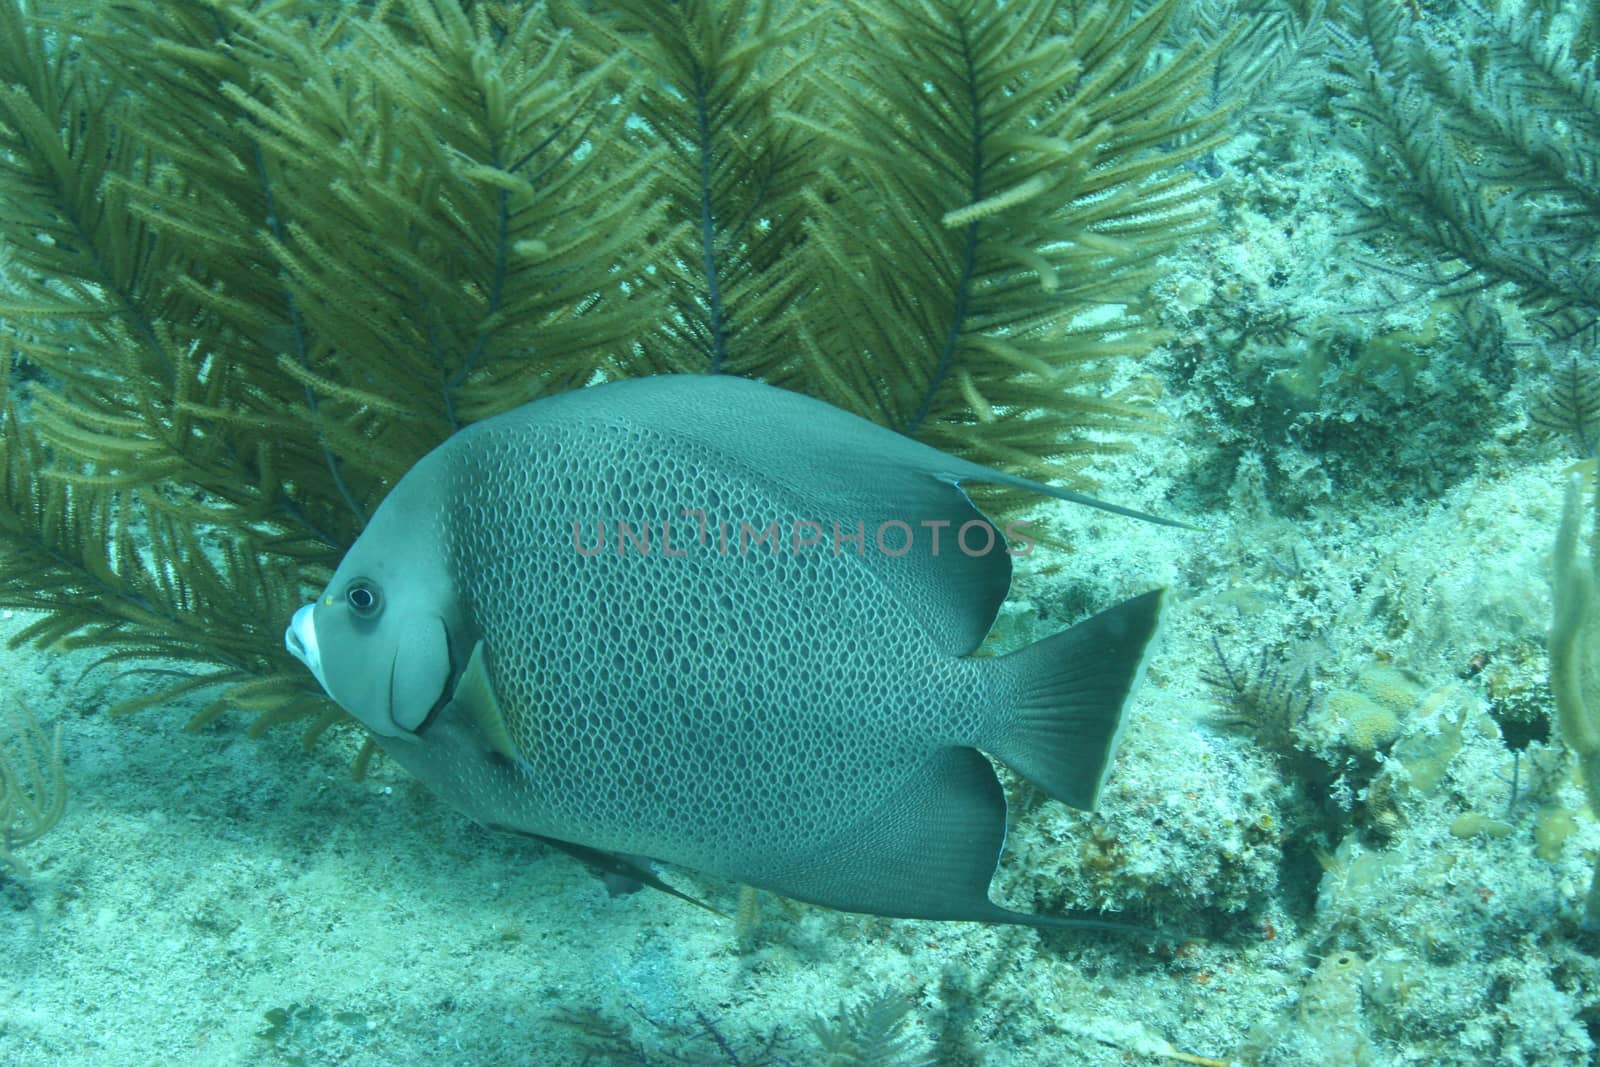 coral life underwater diving safari Caribbean Sea by desant7474